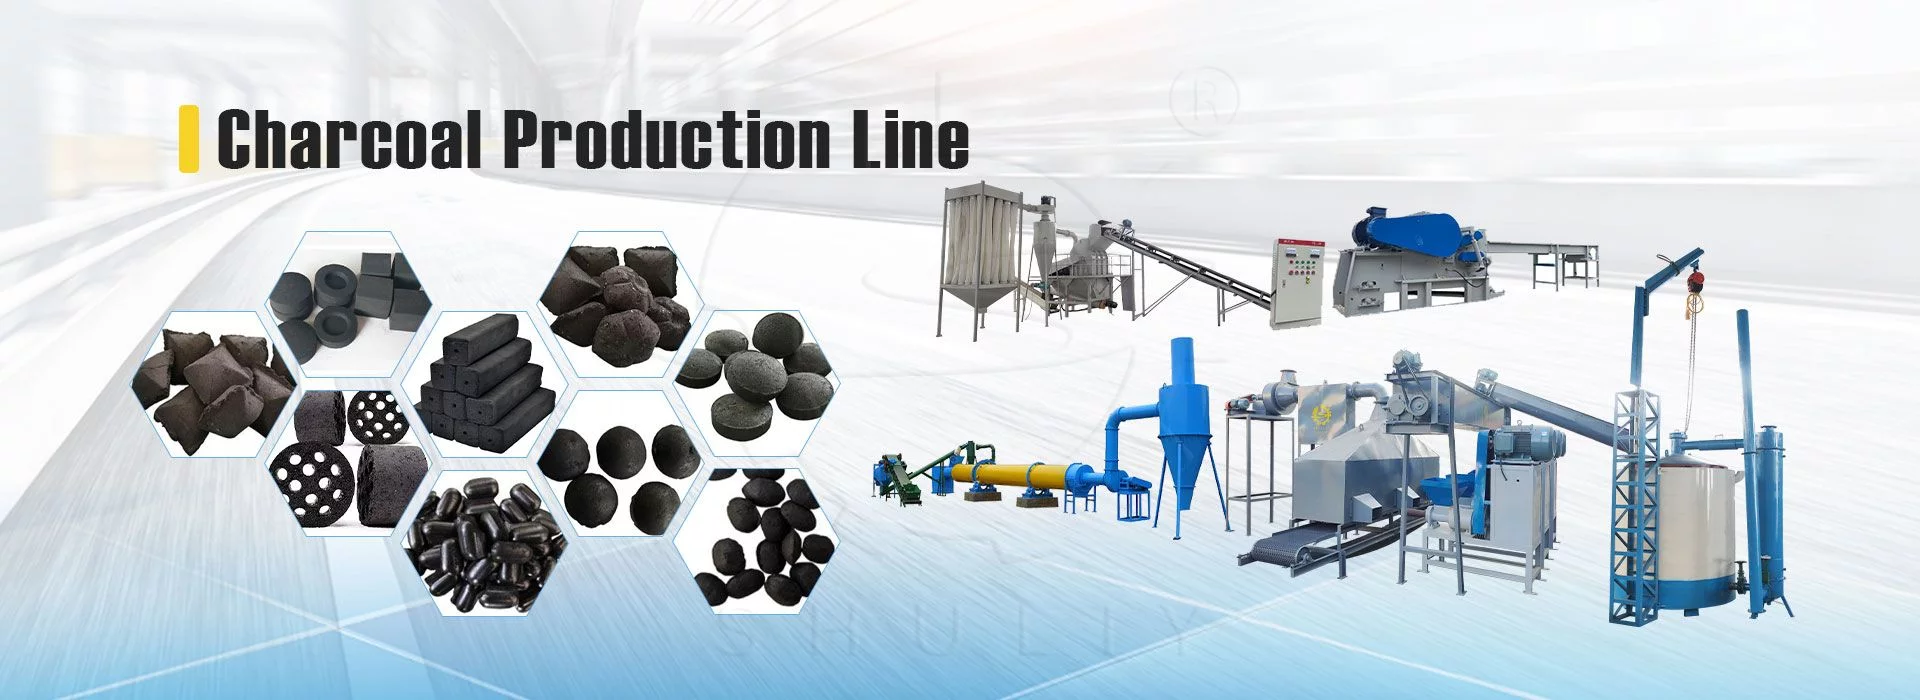 linha de produção de carvão